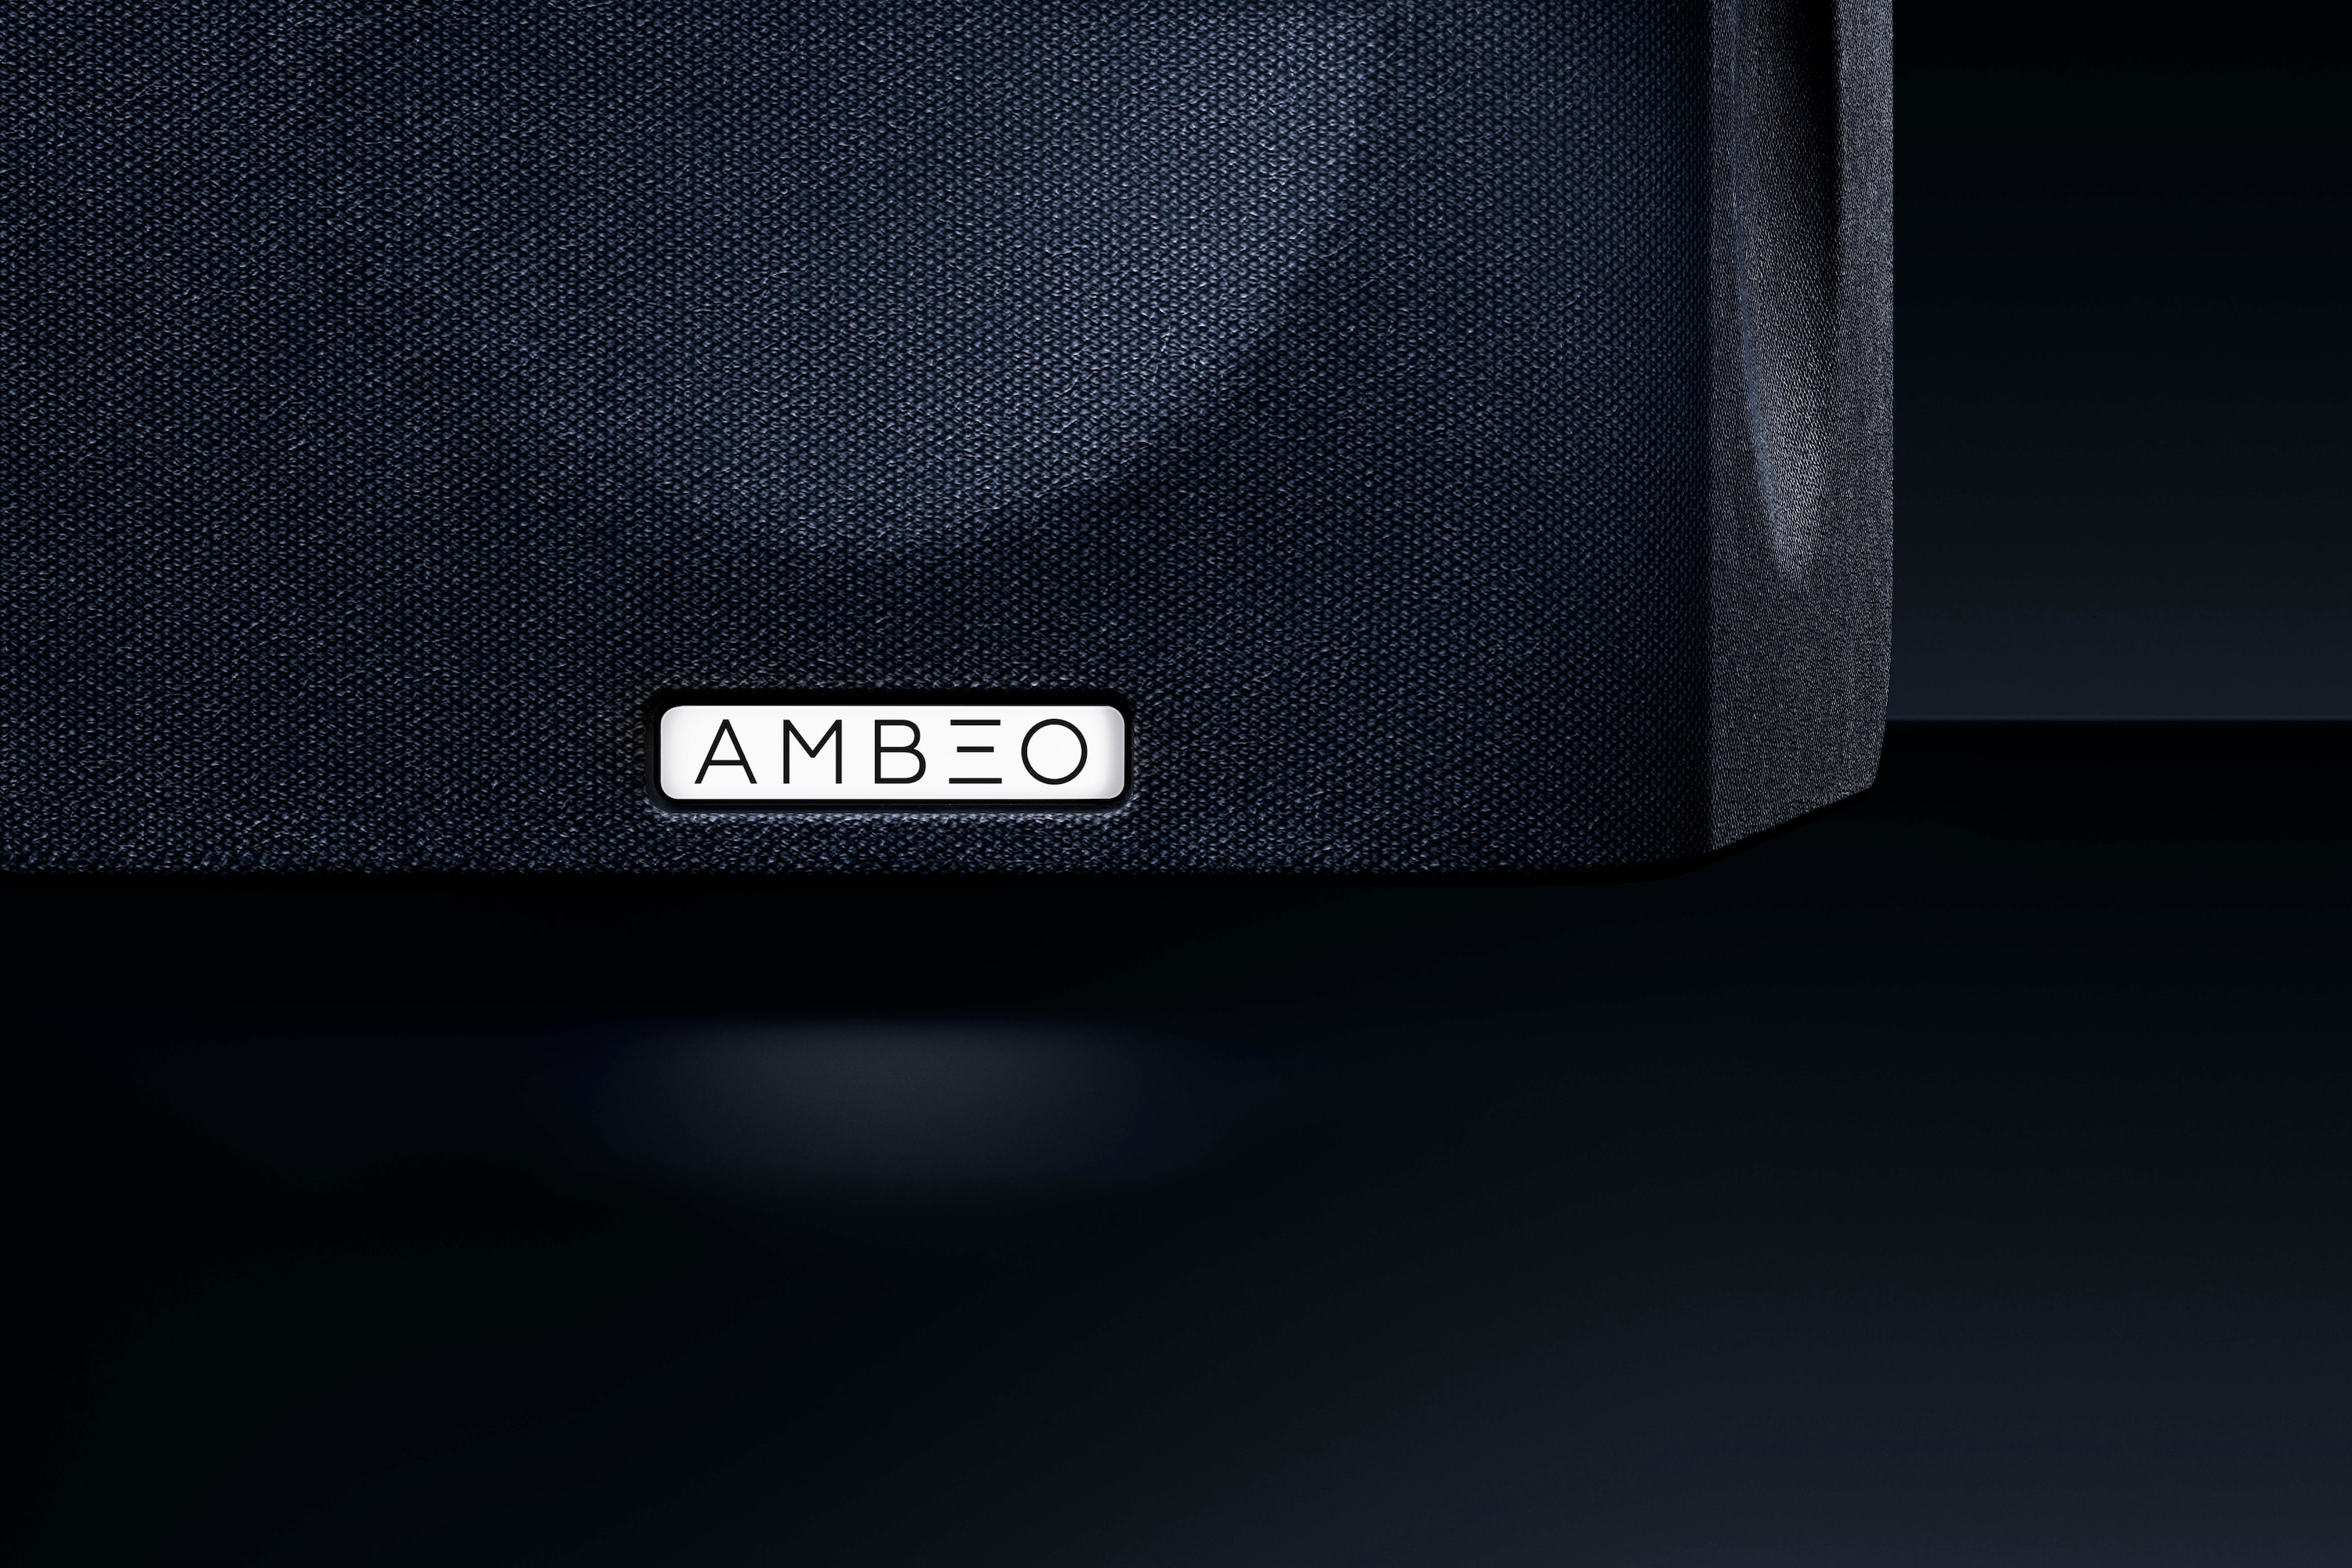 Sennheiser 全新 AMBEO Soundbar 3D 音箱即将发售